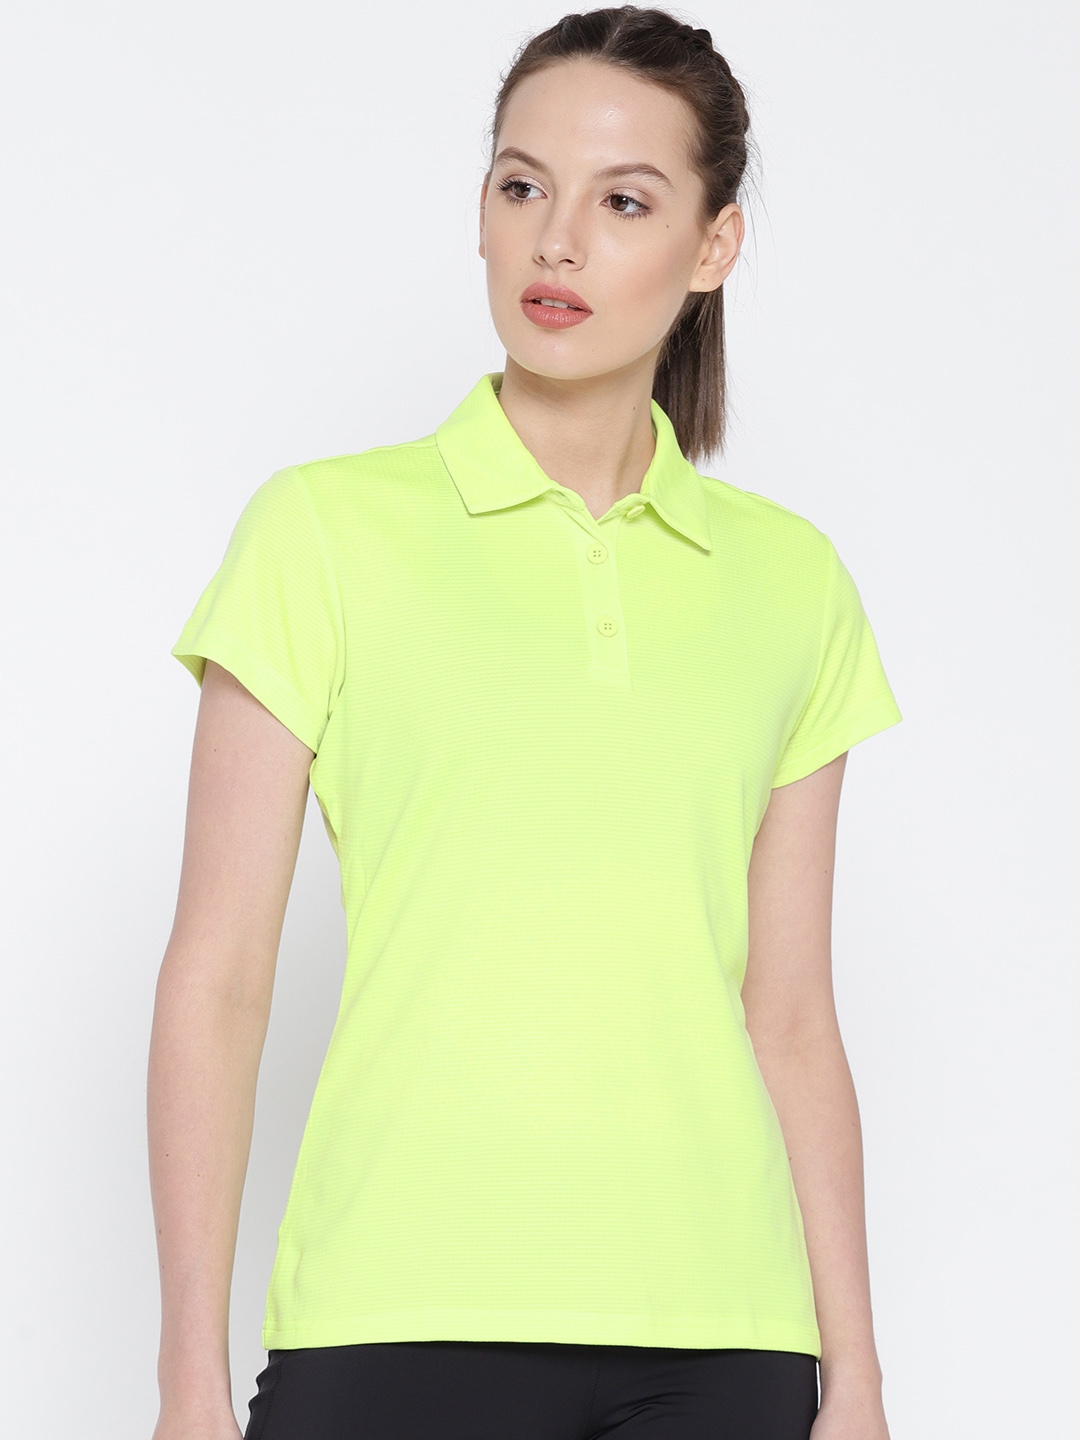 light green polo shirt womens